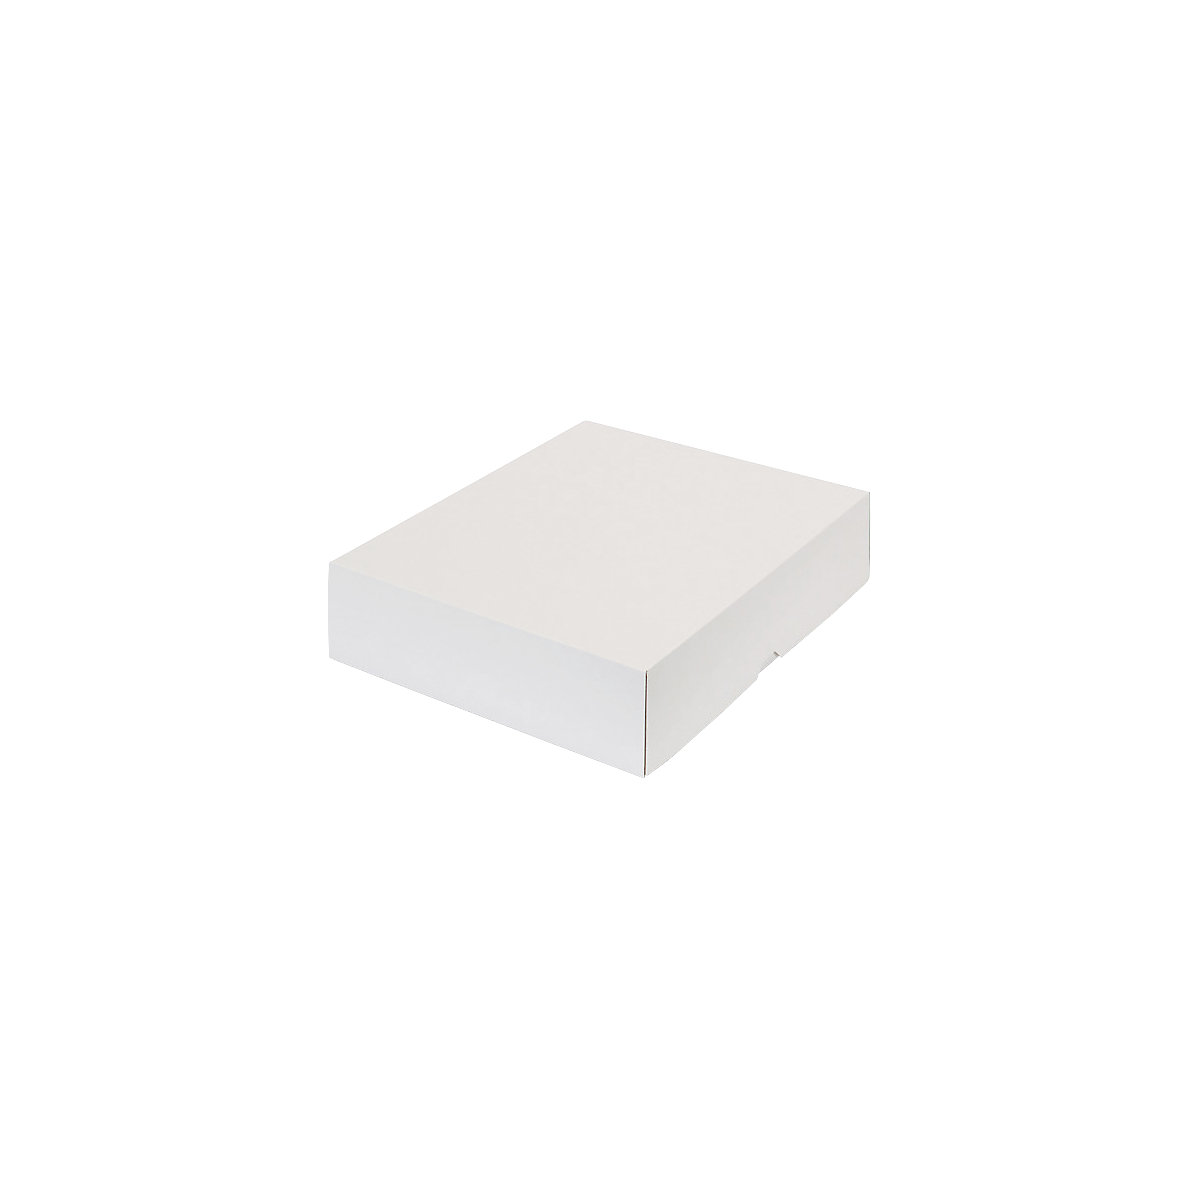 Stülpdeckelkarton, braun, Innenmaße 355 x 275 x 80 mm, B4, weiß, ab 120 Stk